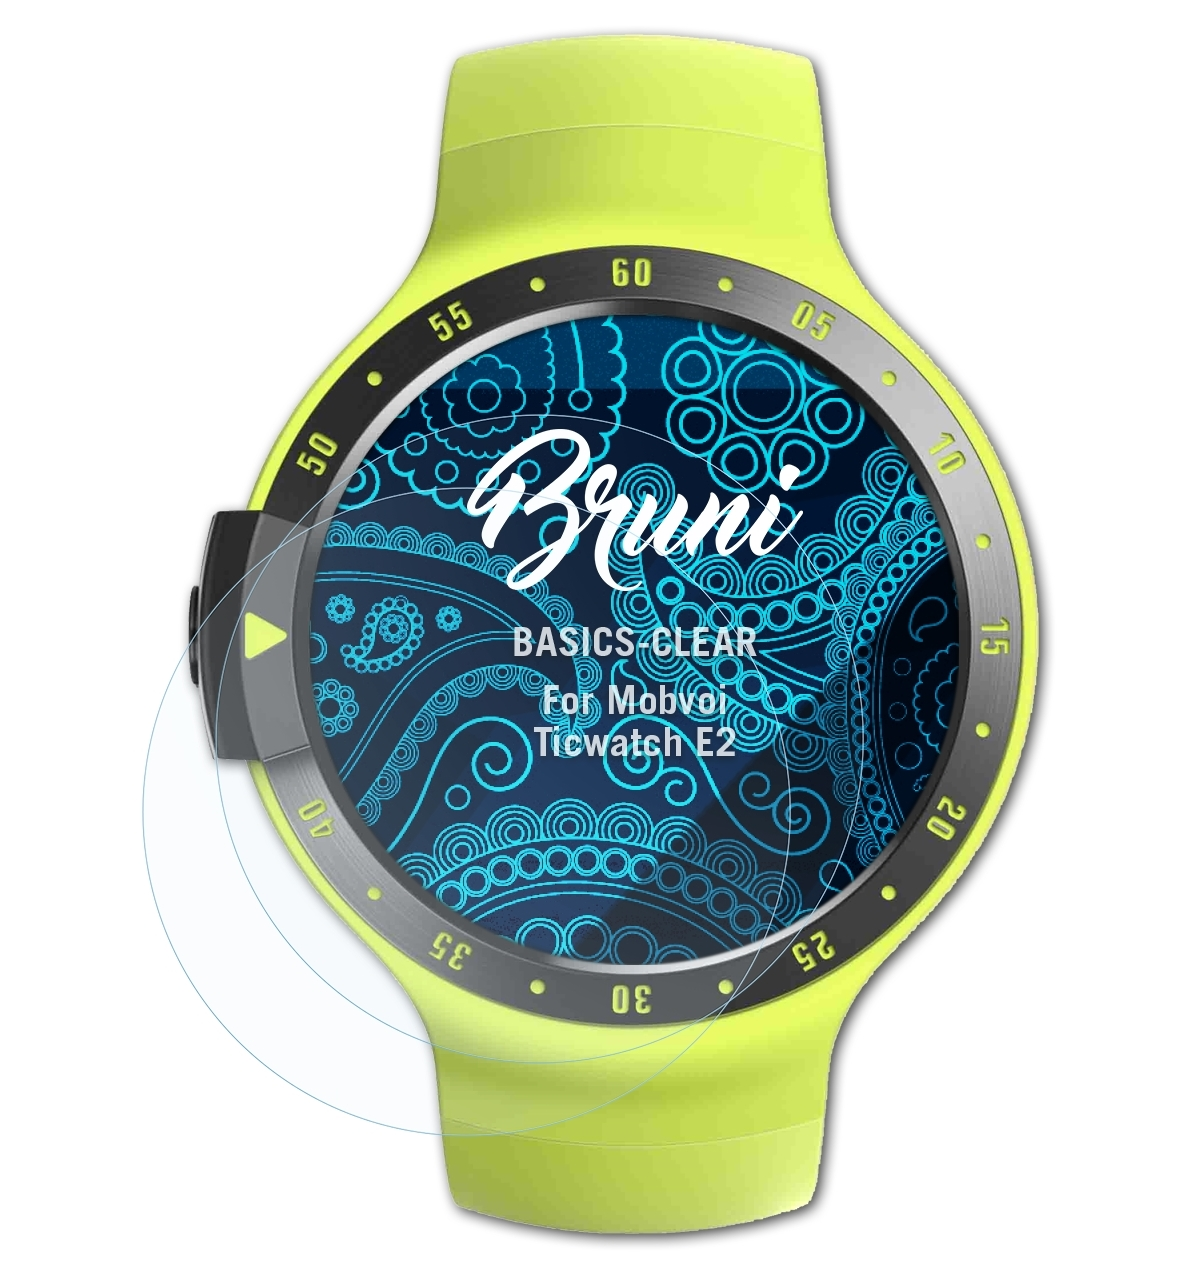 Basics-Clear BRUNI Ticwatch E2) Schutzfolie(für Mobvoi 2x